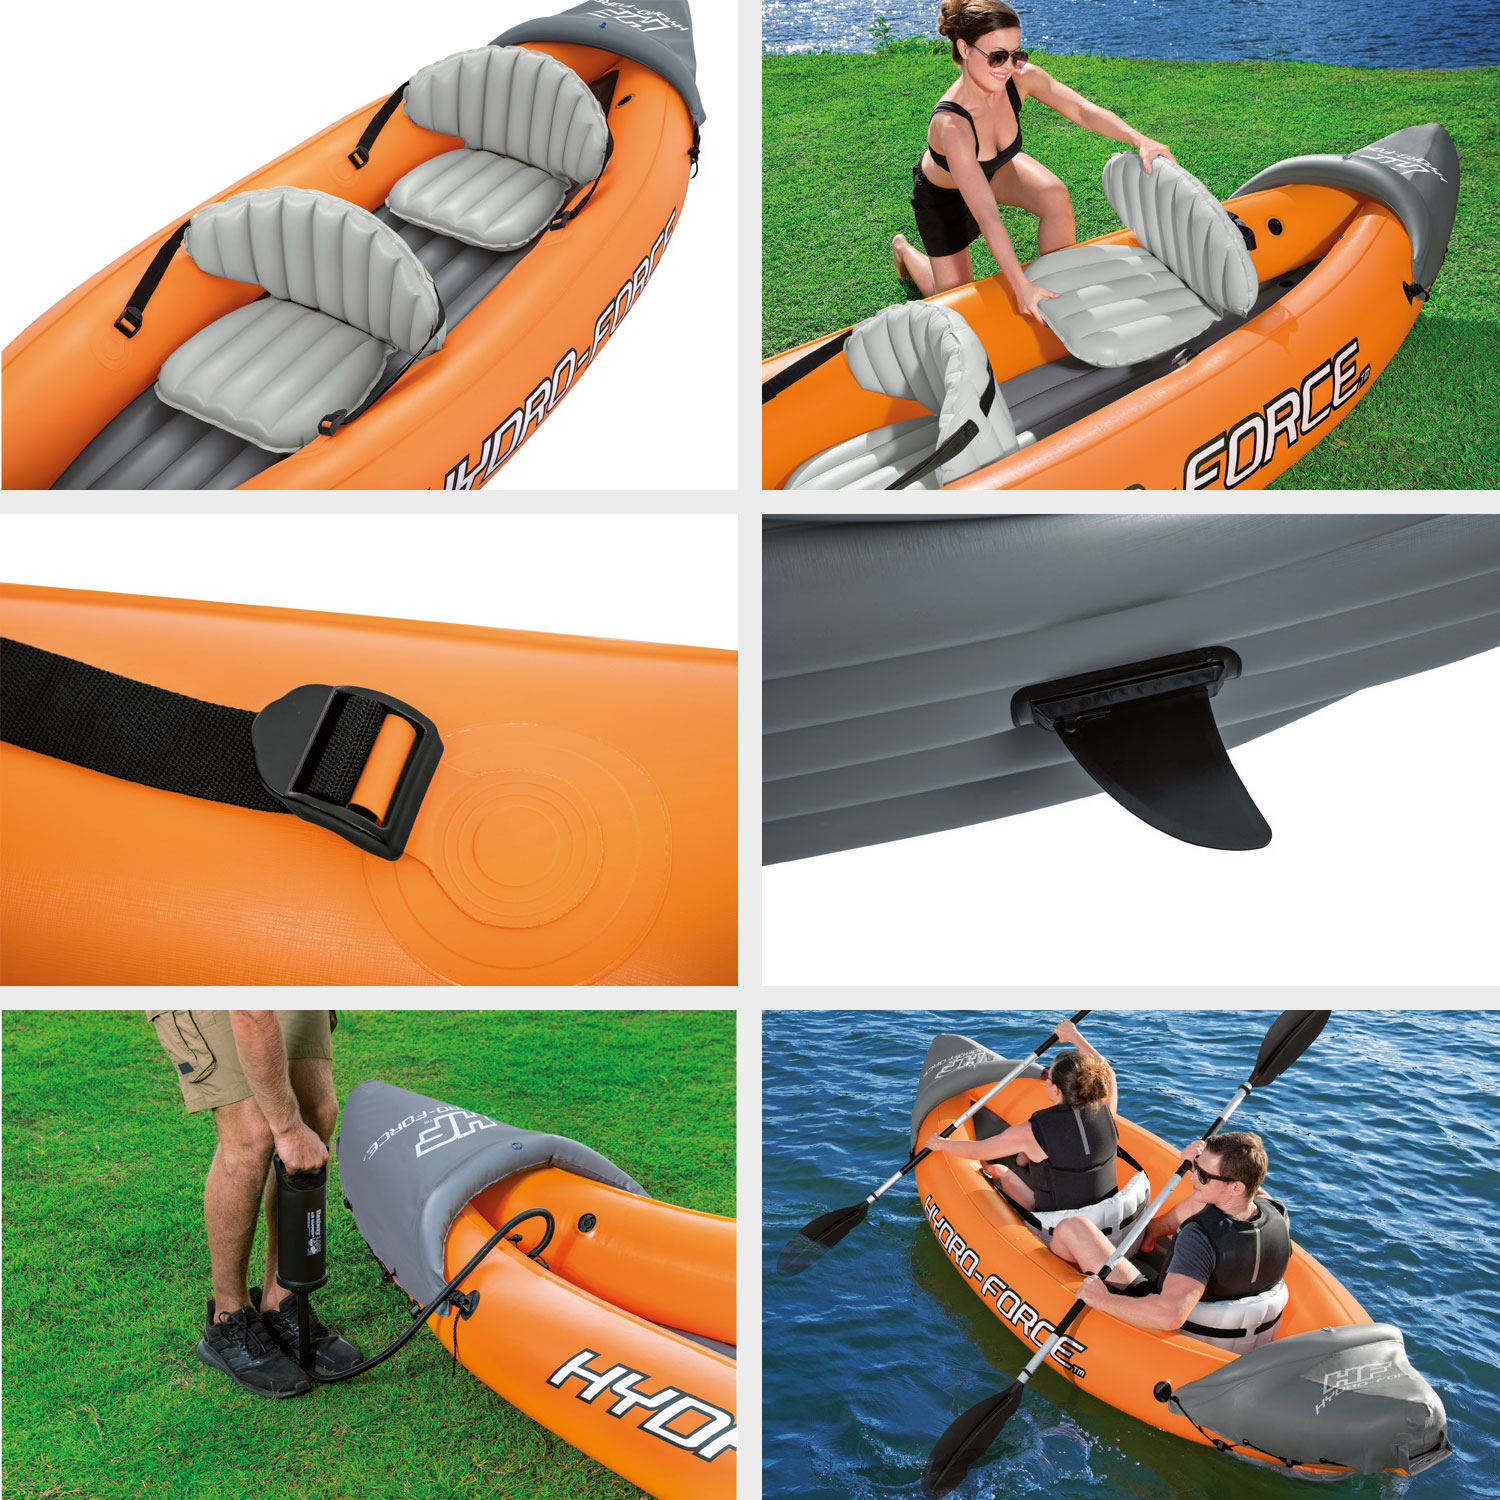 Bestway Hydro force kayak Lite-rapid X2